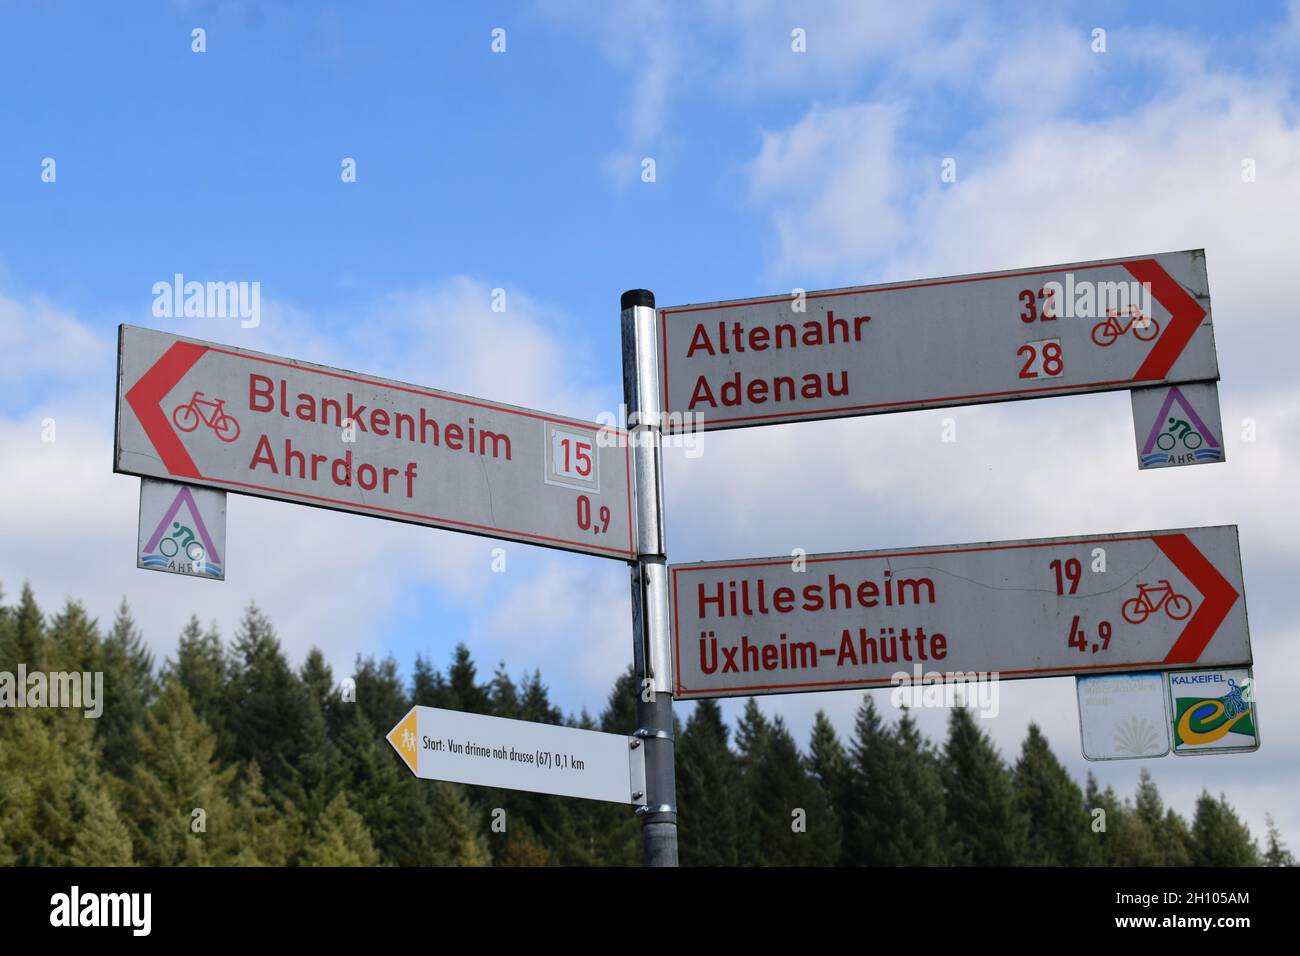 bike road sign to Altenahr, Adenau, Hillesheim, Üxheim, Ahütte, Blankenheim, Ahrdorf Stock Photo